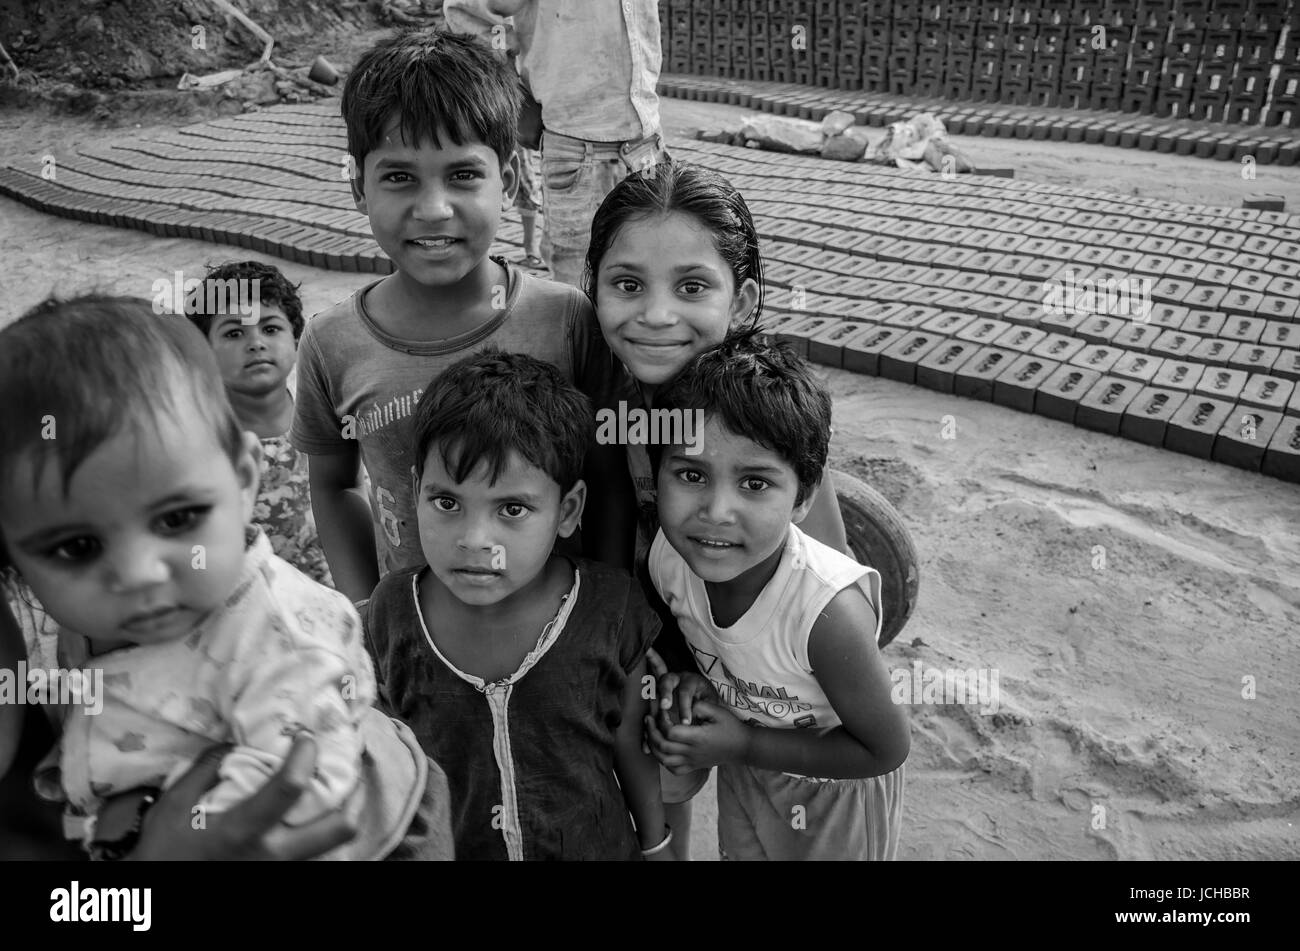 Amritsar, Punjab, india - 21 avril 2017 : Photo d'enfants indiens monochrome Banque D'Images